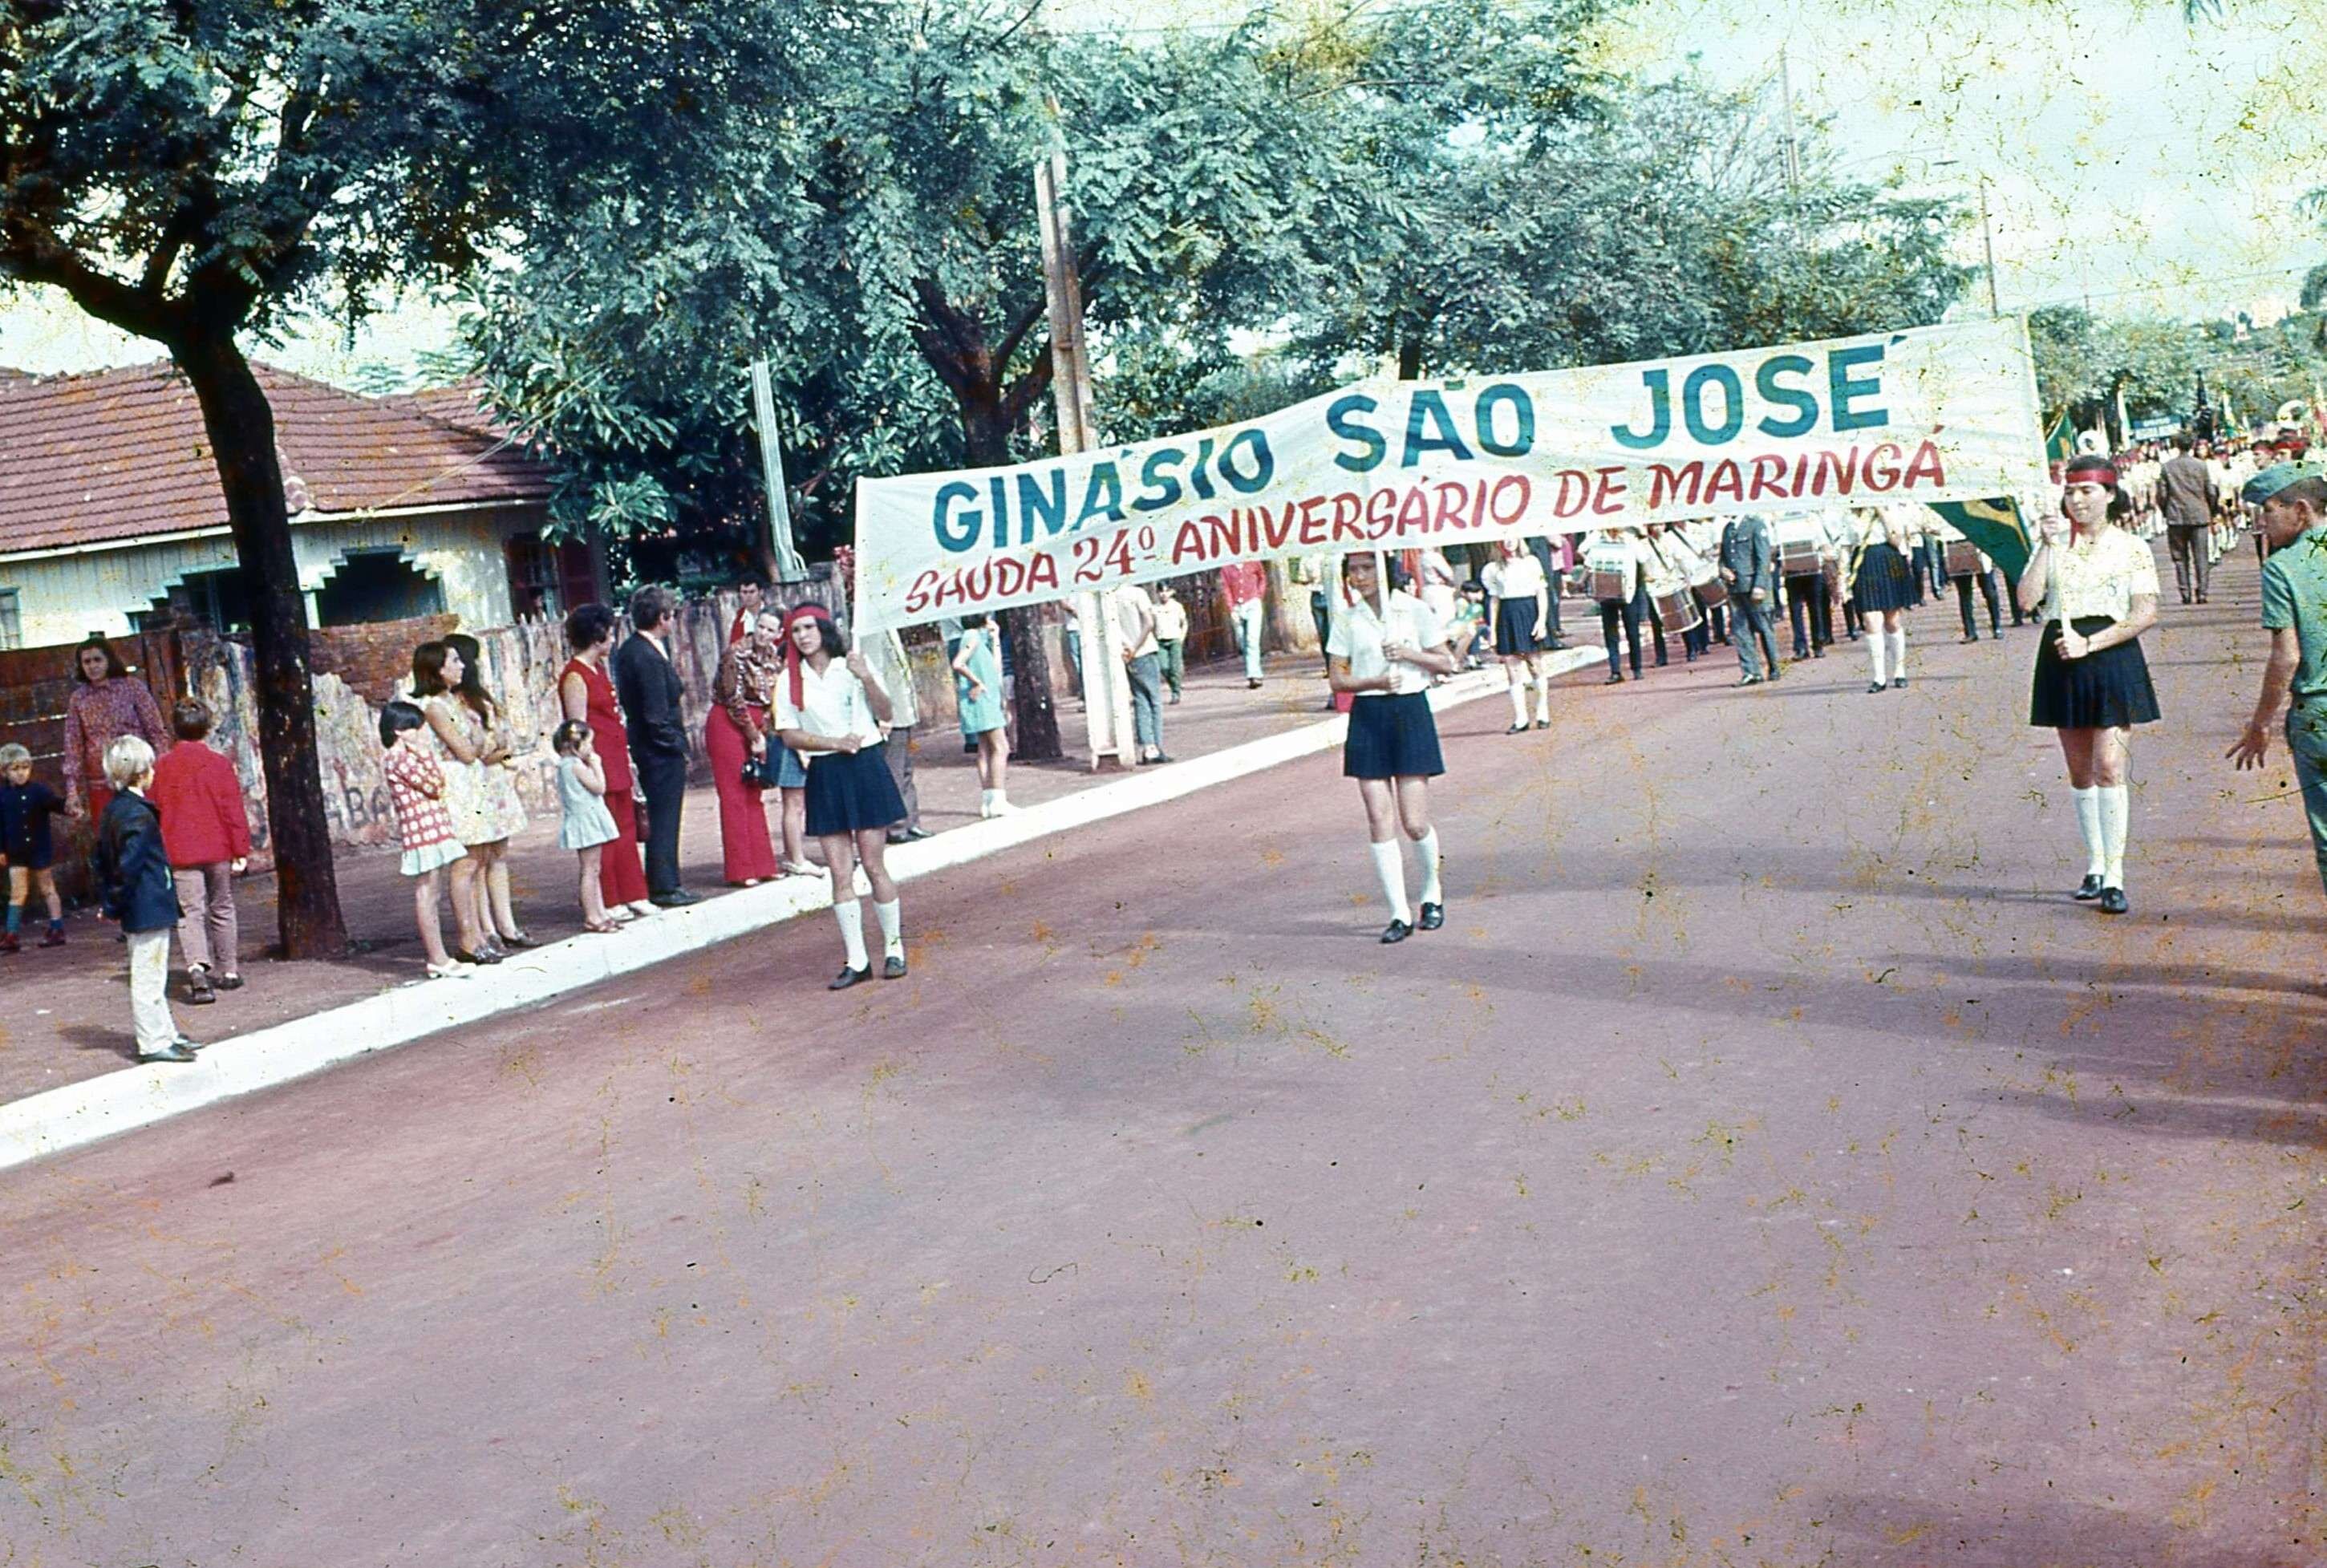 Ginásio São José no desfile de Maringá - 1971